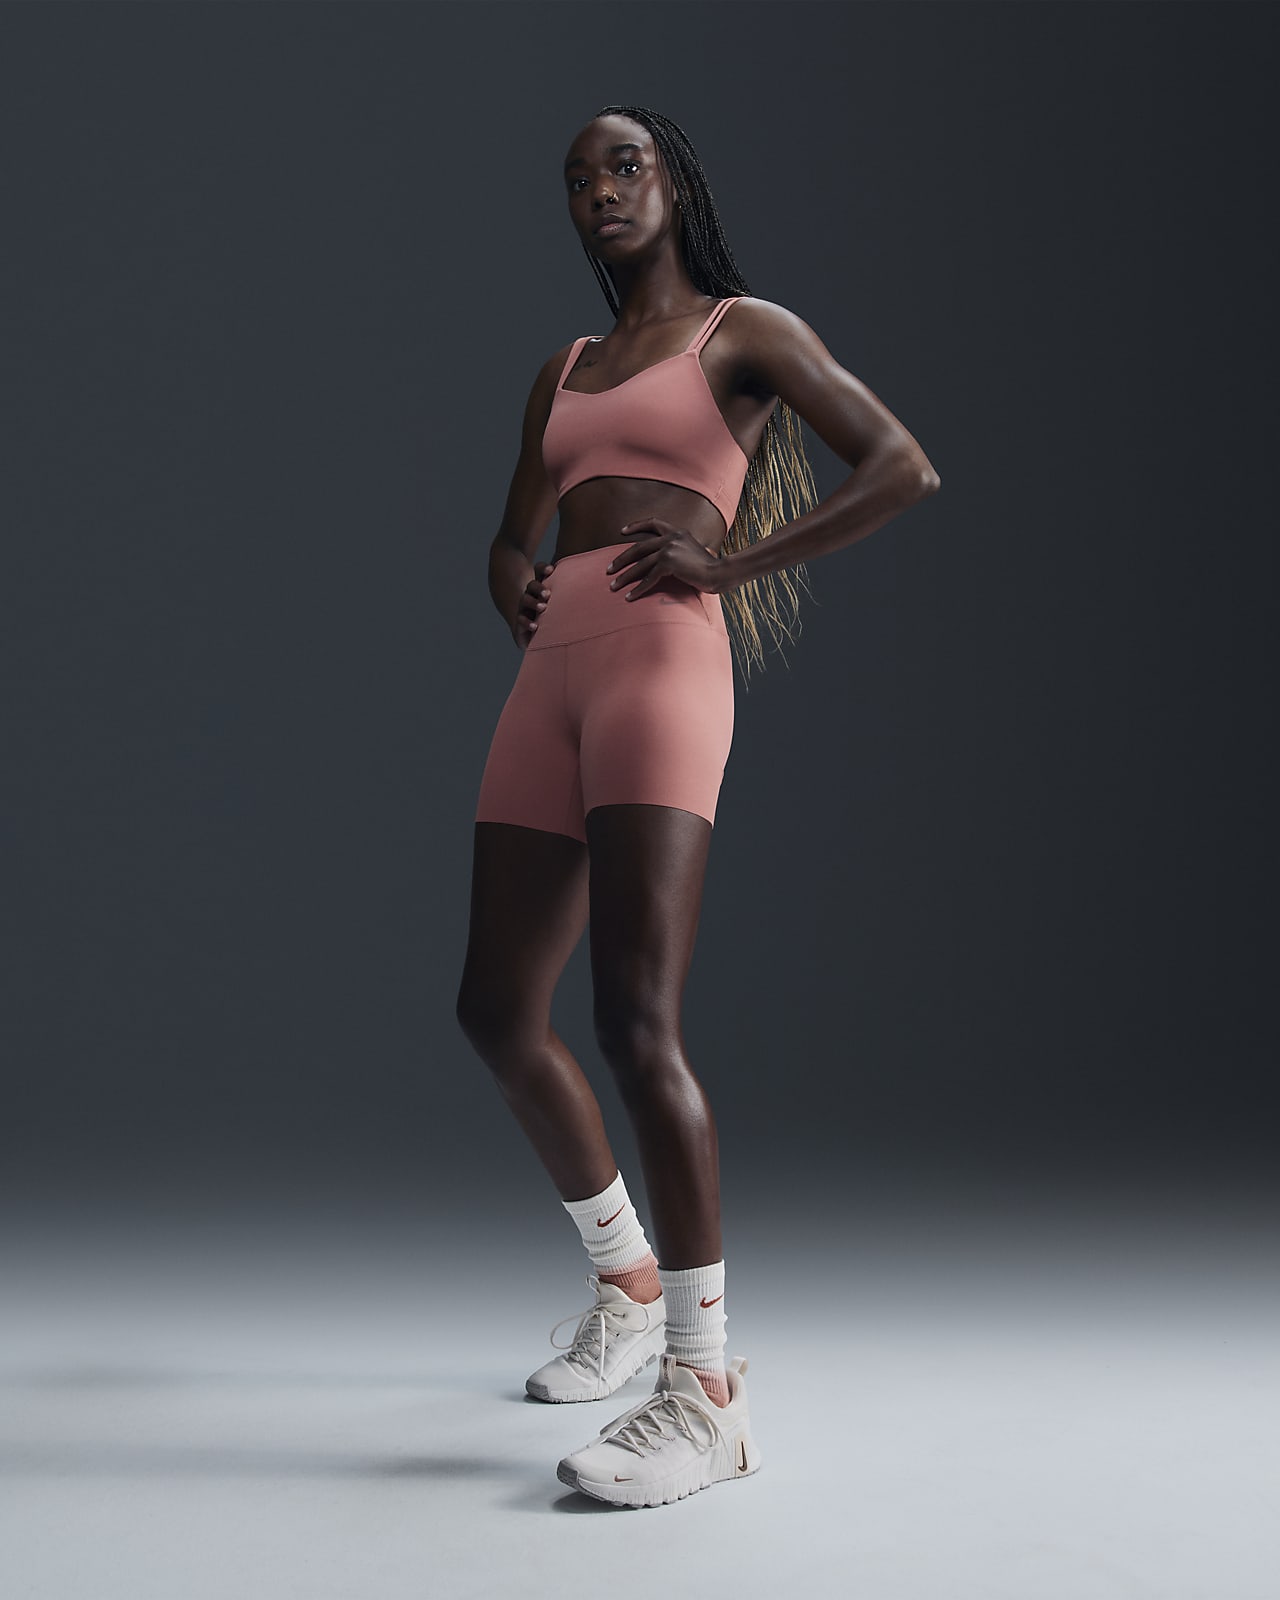 Nike Zenvy Women's Gentle-Support High-Waisted 13cm (approx.) Biker Shorts